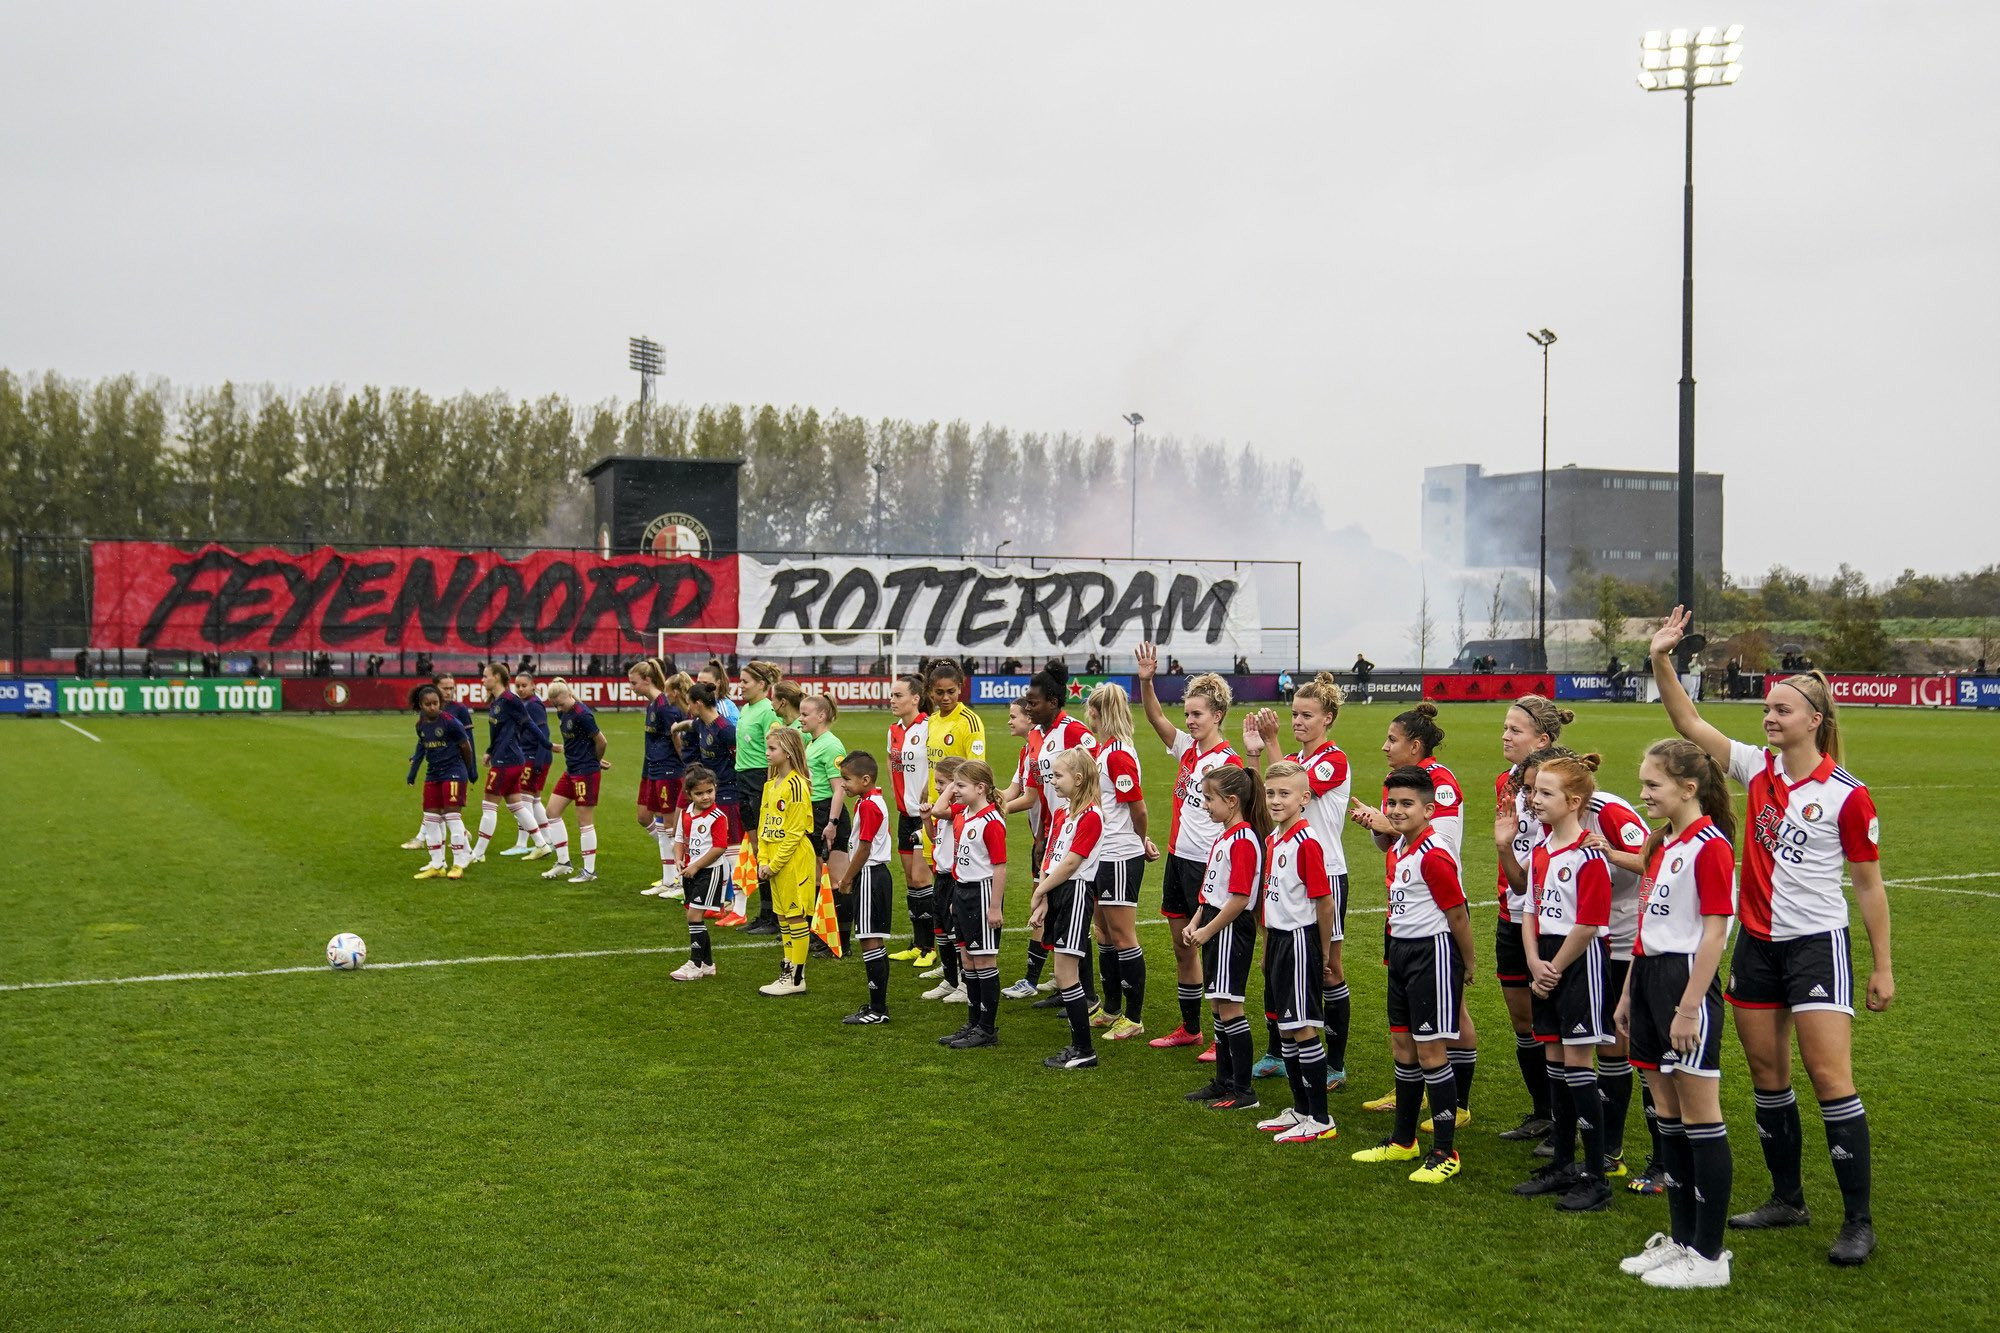 "Verwachtingen zijn hoog, omdat de naam van Feyenoord eraan kleeft"